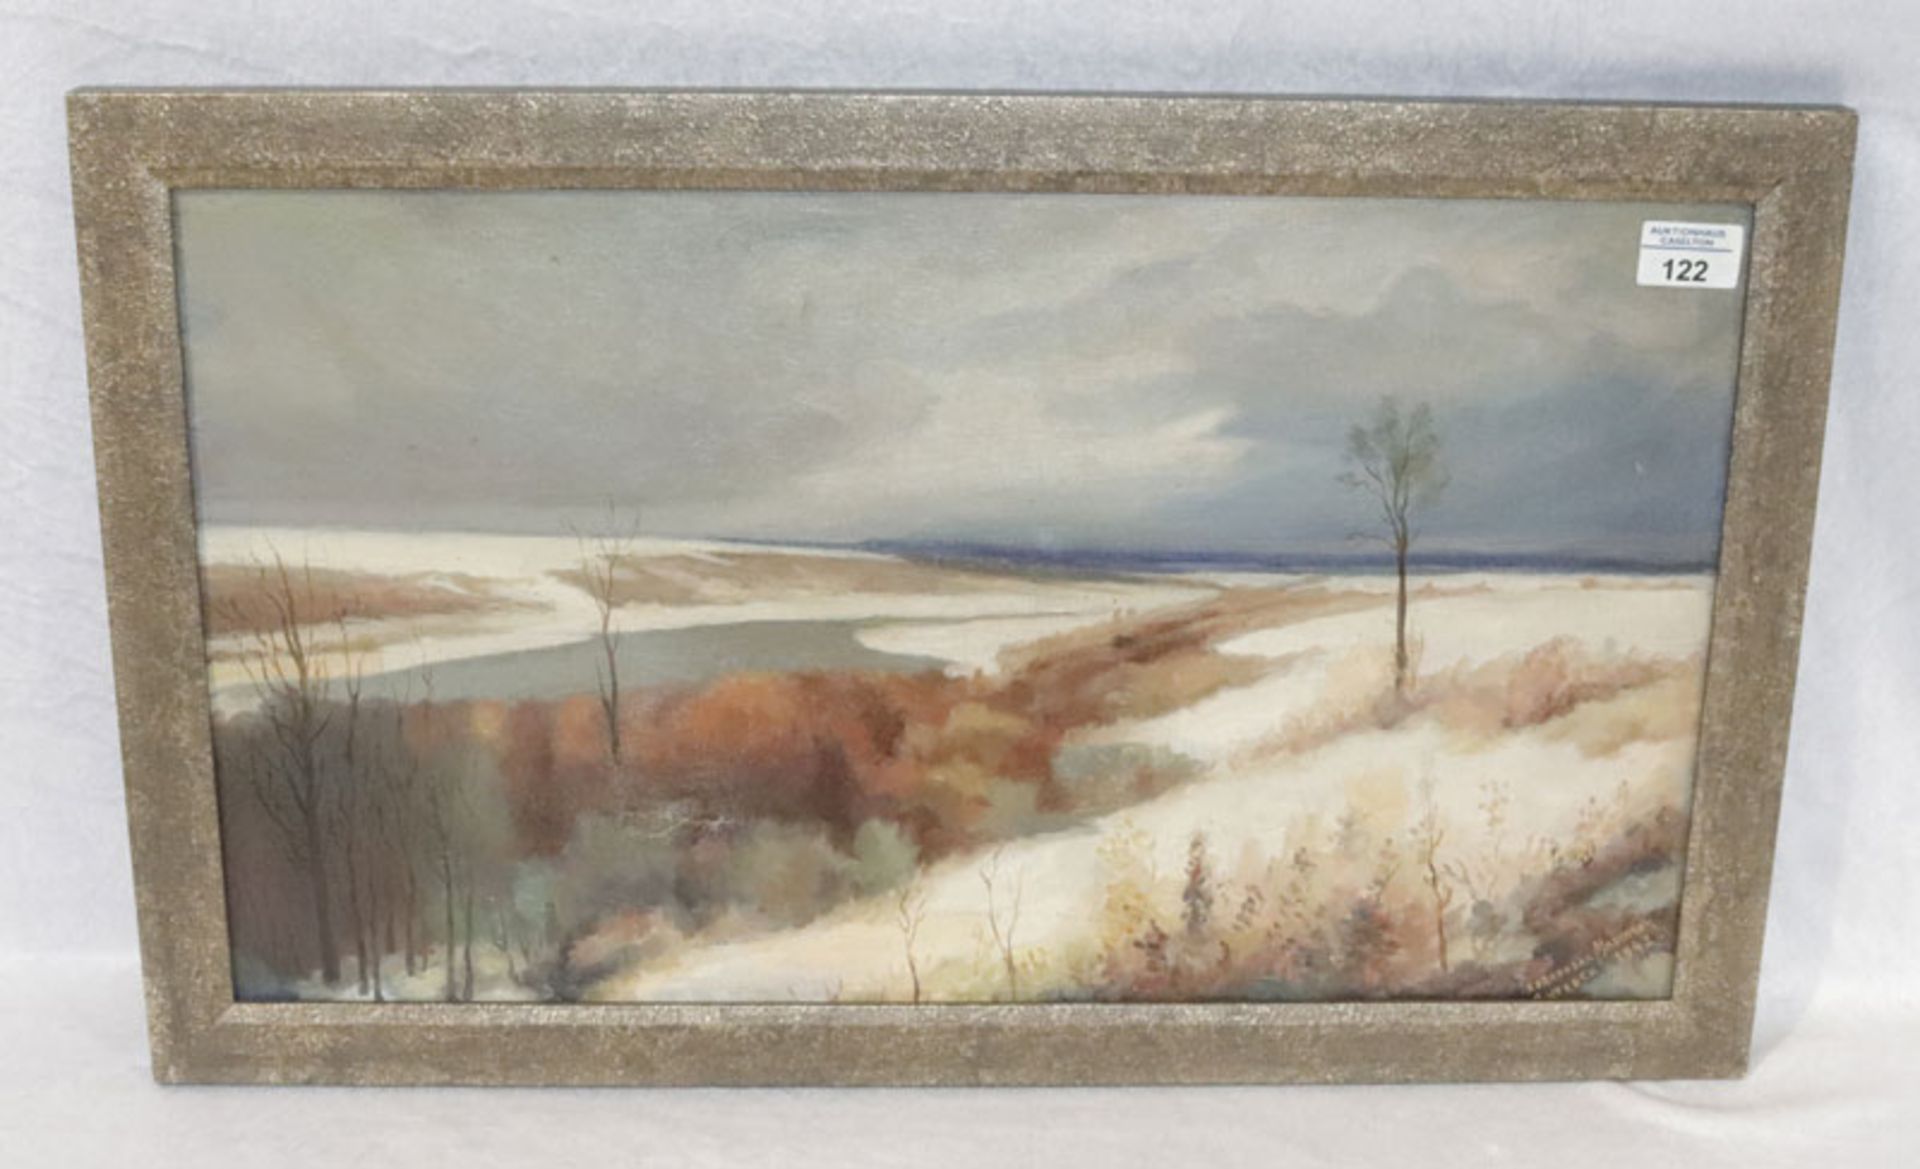 Gemälde ÖL/LW 'Landschafts-Szenerie', kyrilisch signiert, und datiert 1943, LW hat Riß, gerahmt,